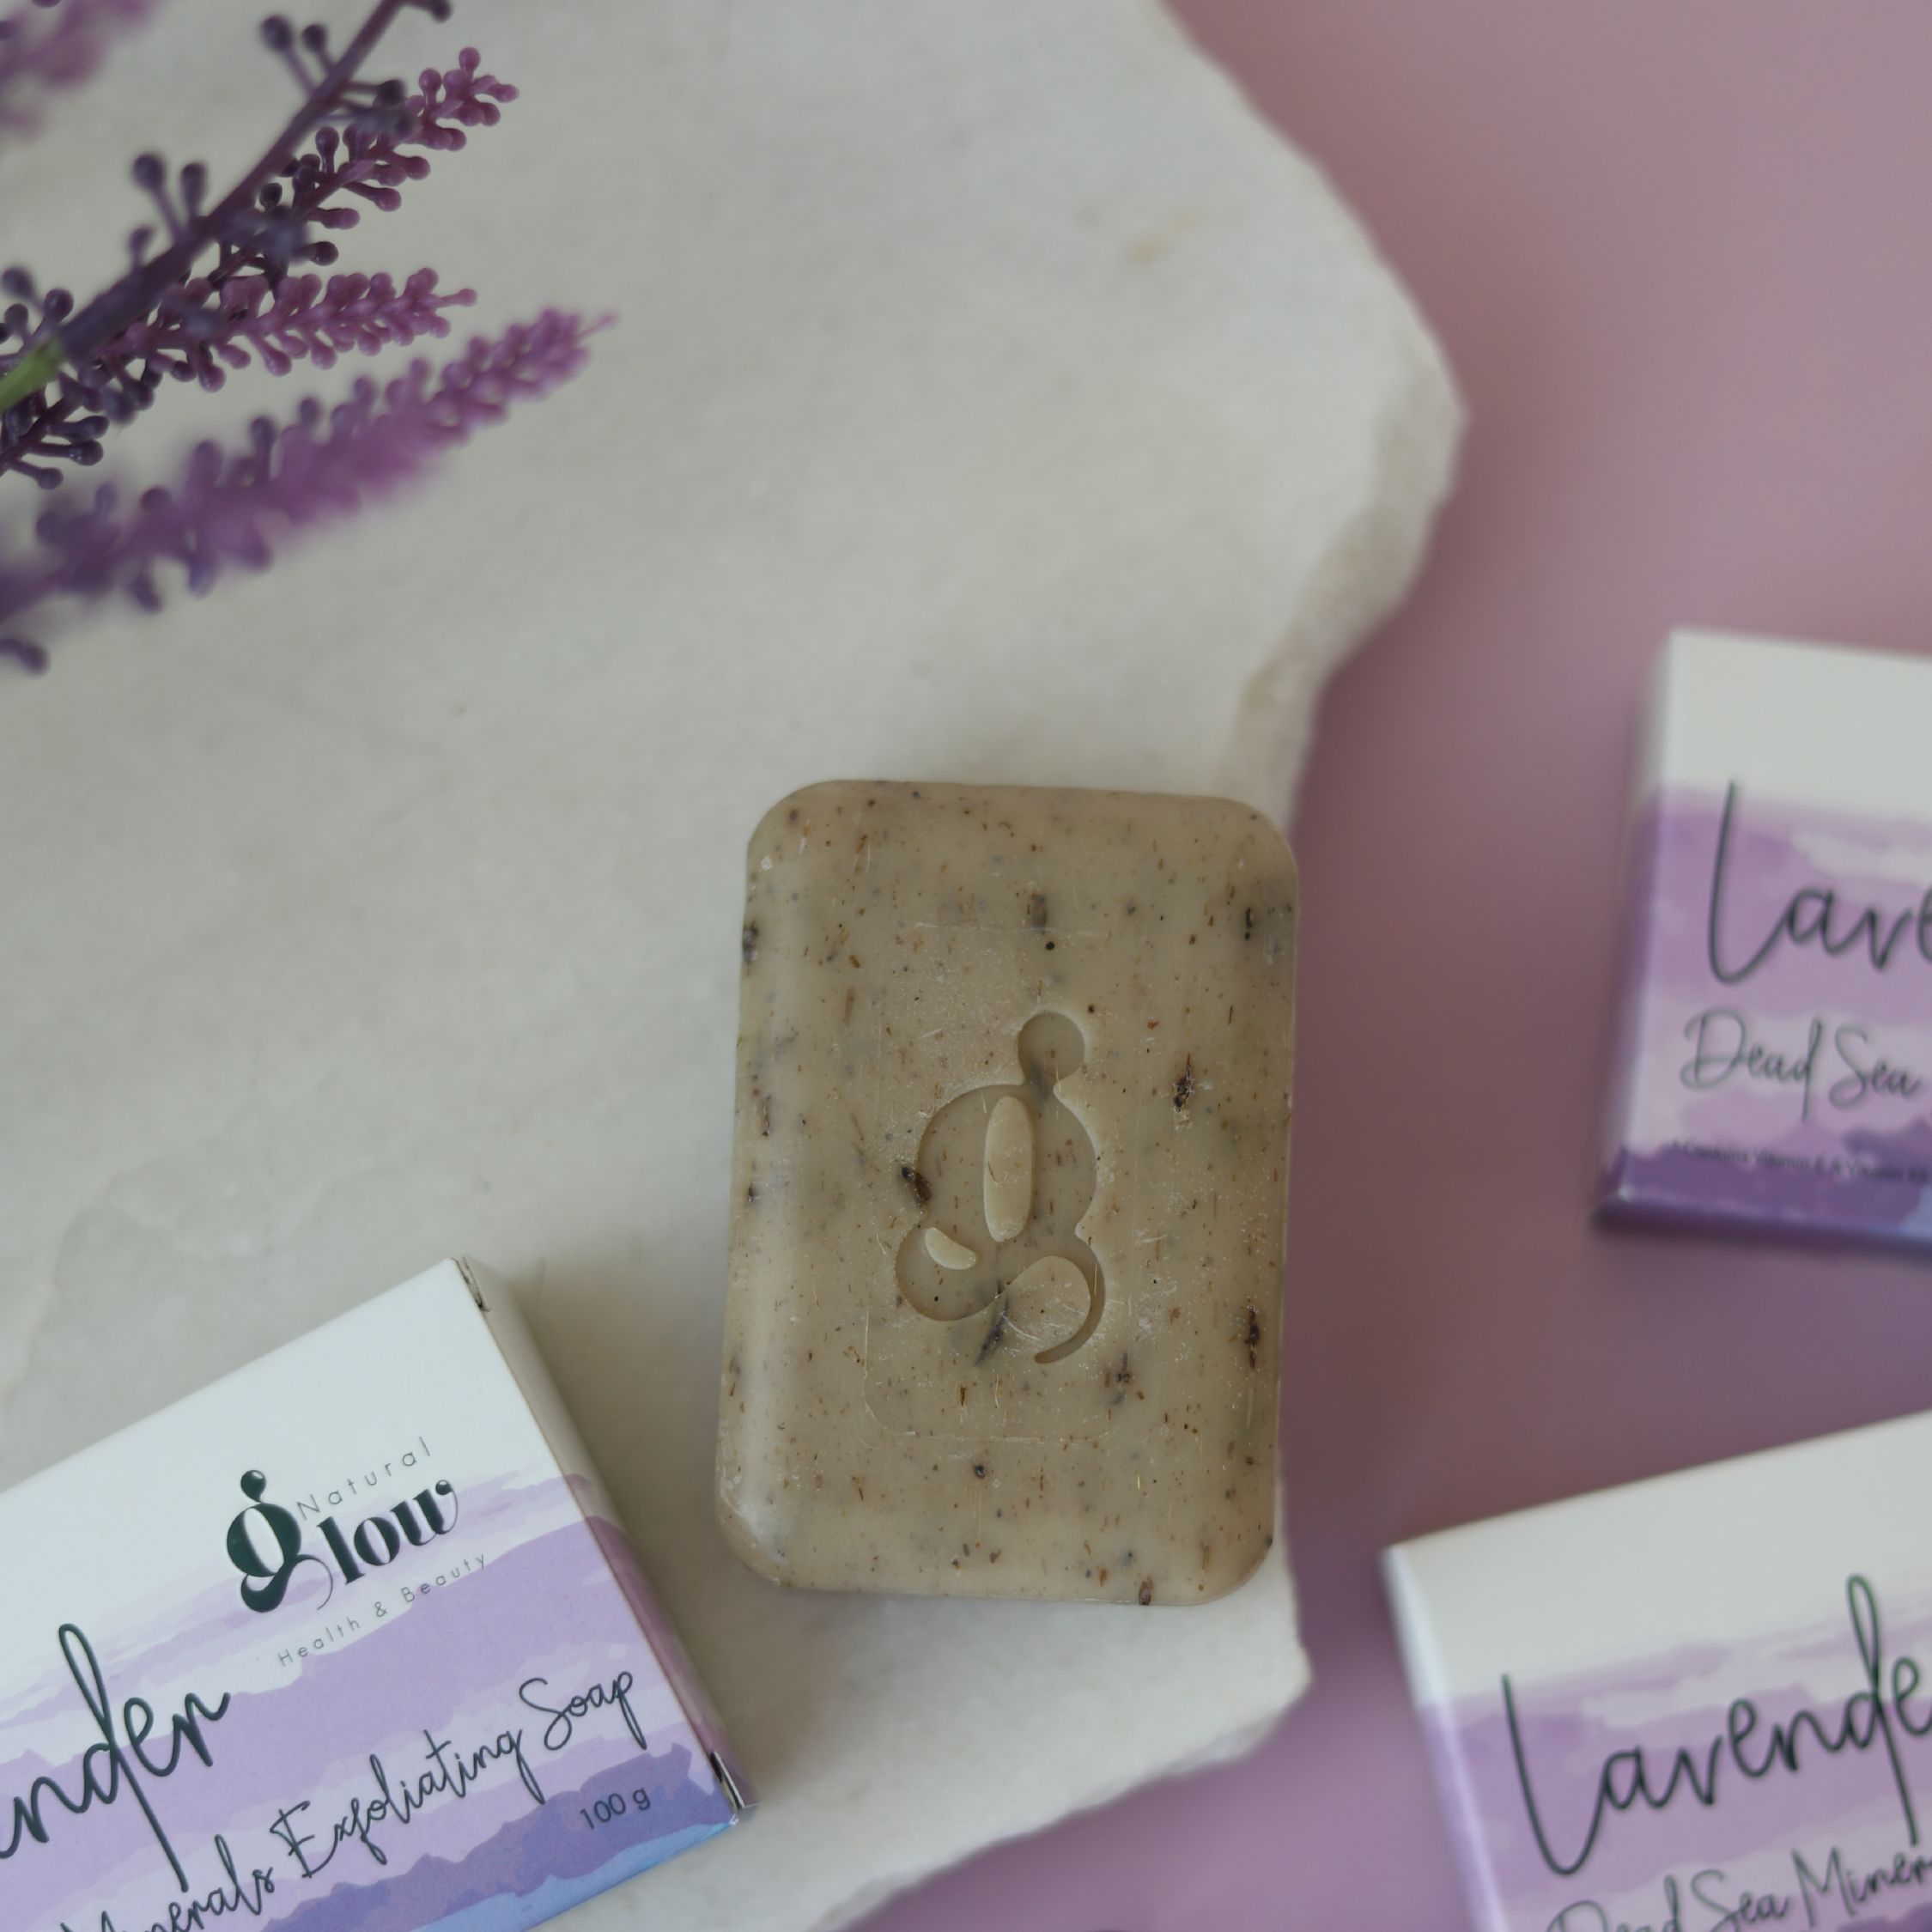 Lavender Dead Sea Minerals Exfoliating Soap